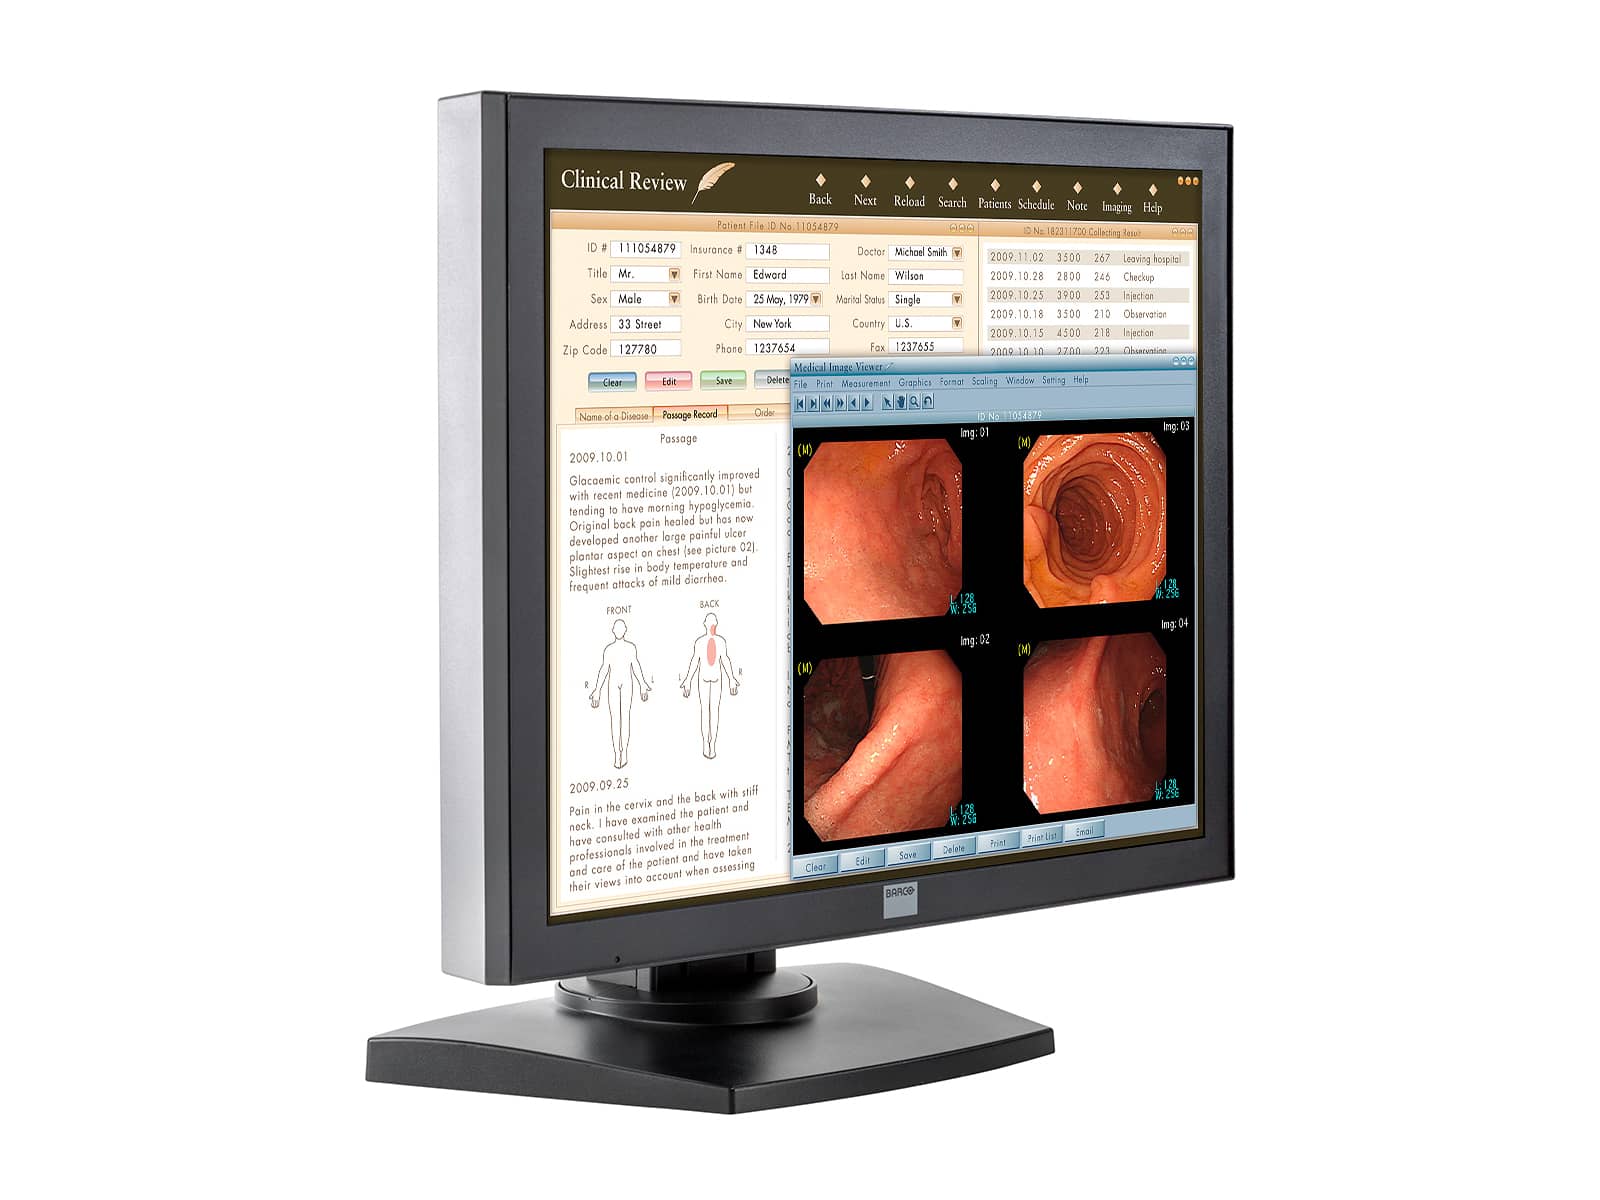 Barco MDRC-1119-TS Pantalla de revisión clínica en color con pantalla táctil de 1" y 19 MP (K9301801A) Monitors.com